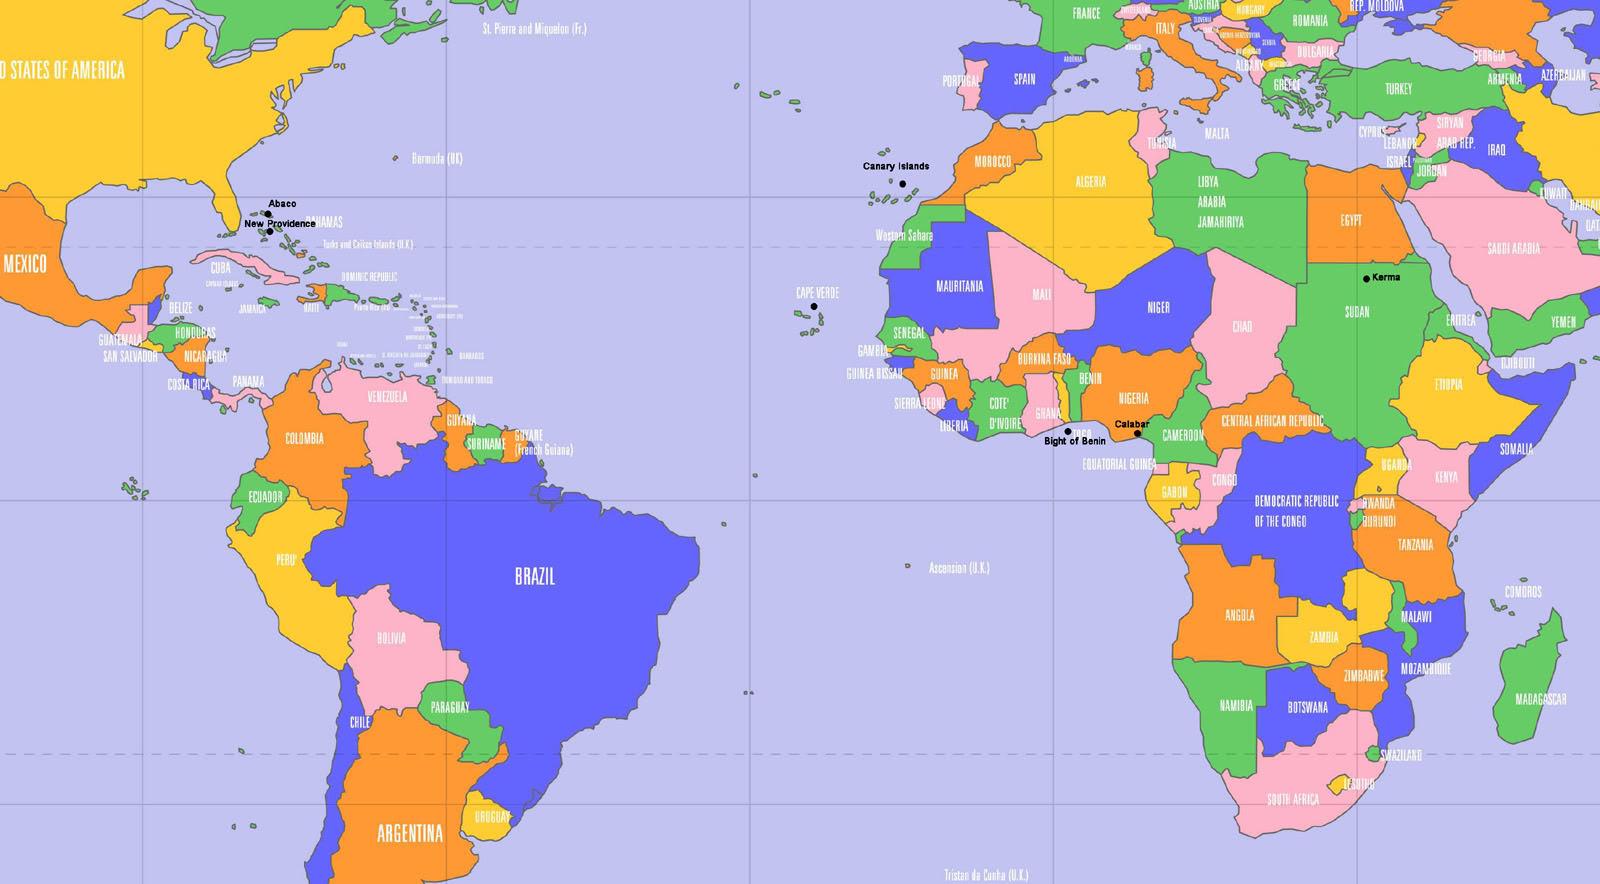 situer le cap vert sur une carte du monde